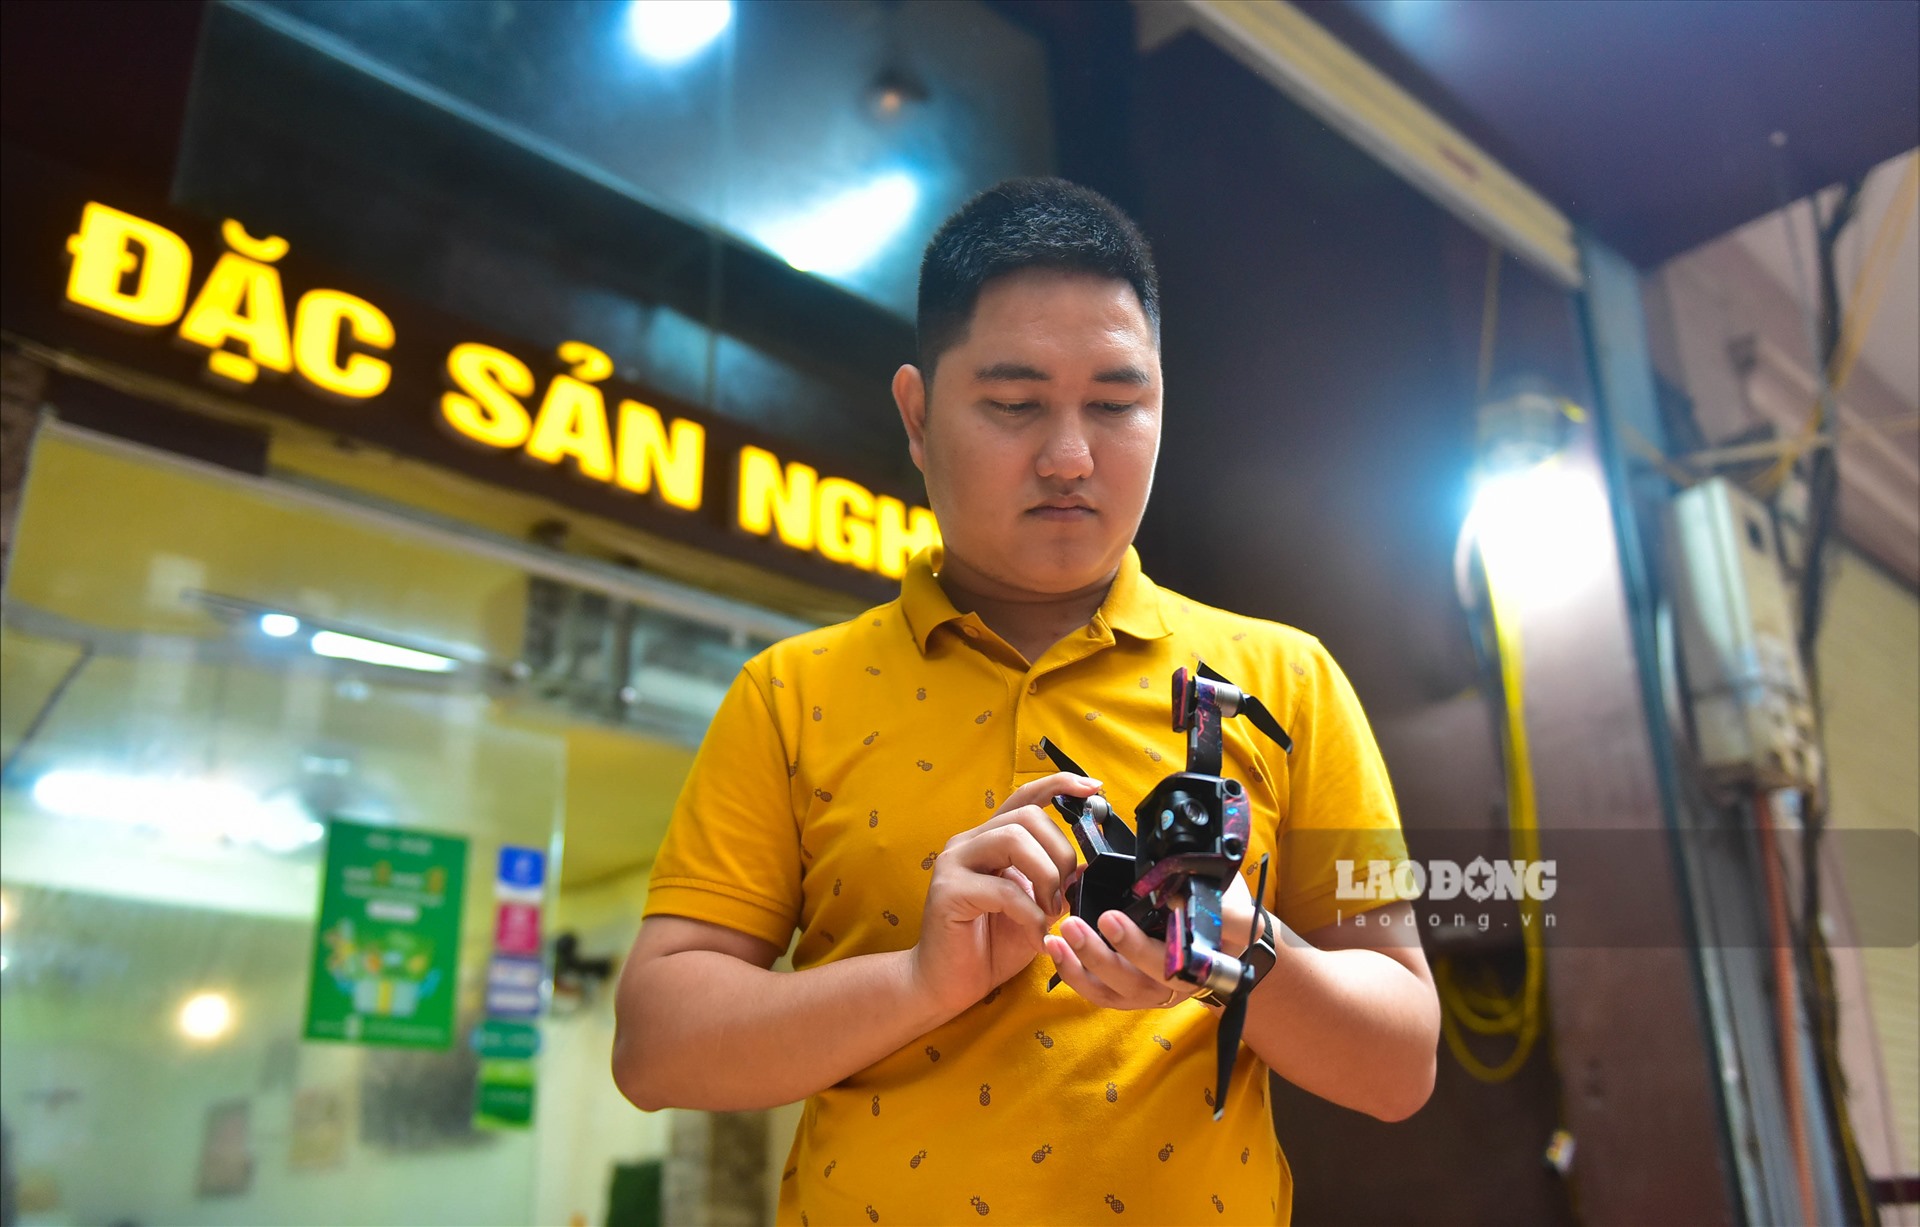 Đức Sơn - một chủ quán bánh mỳ tại Hà Nội đã nảy ra ý tưởng dùng flycam chuyển bánh cho khách trước tình hình hình dịch COVID-19 đang diễn biến phức tạp.